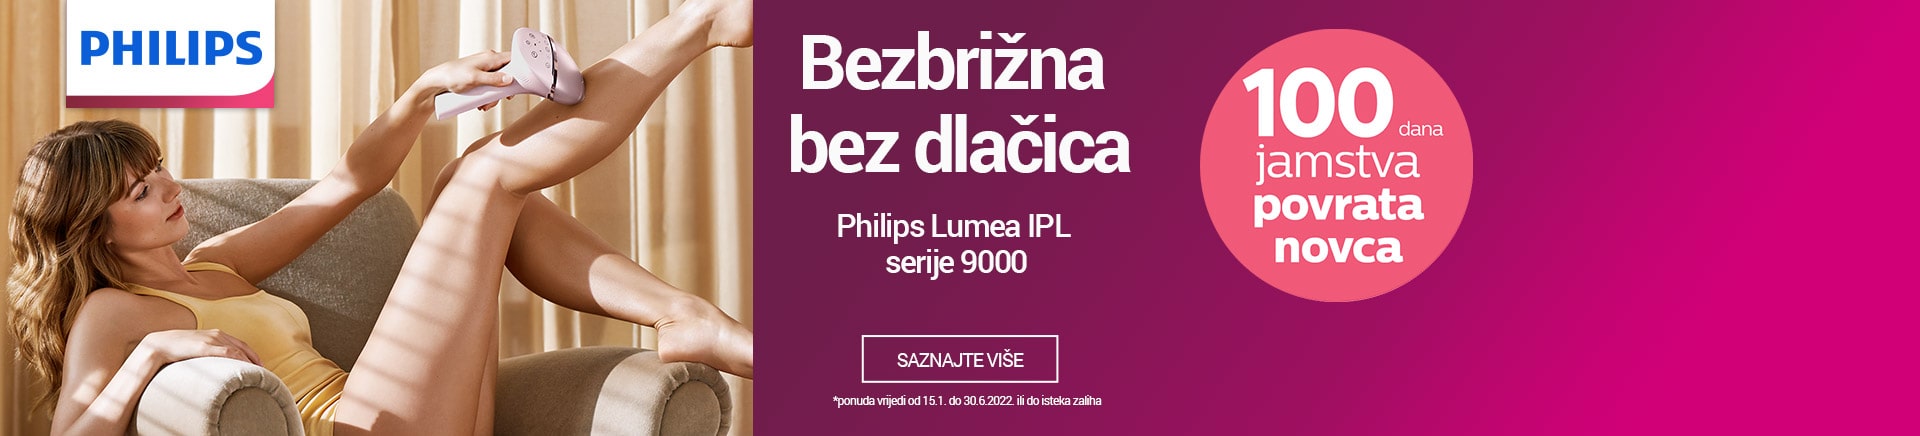 Philips Lumea IPL serija 9000 - Bezbrižna bez dlačica